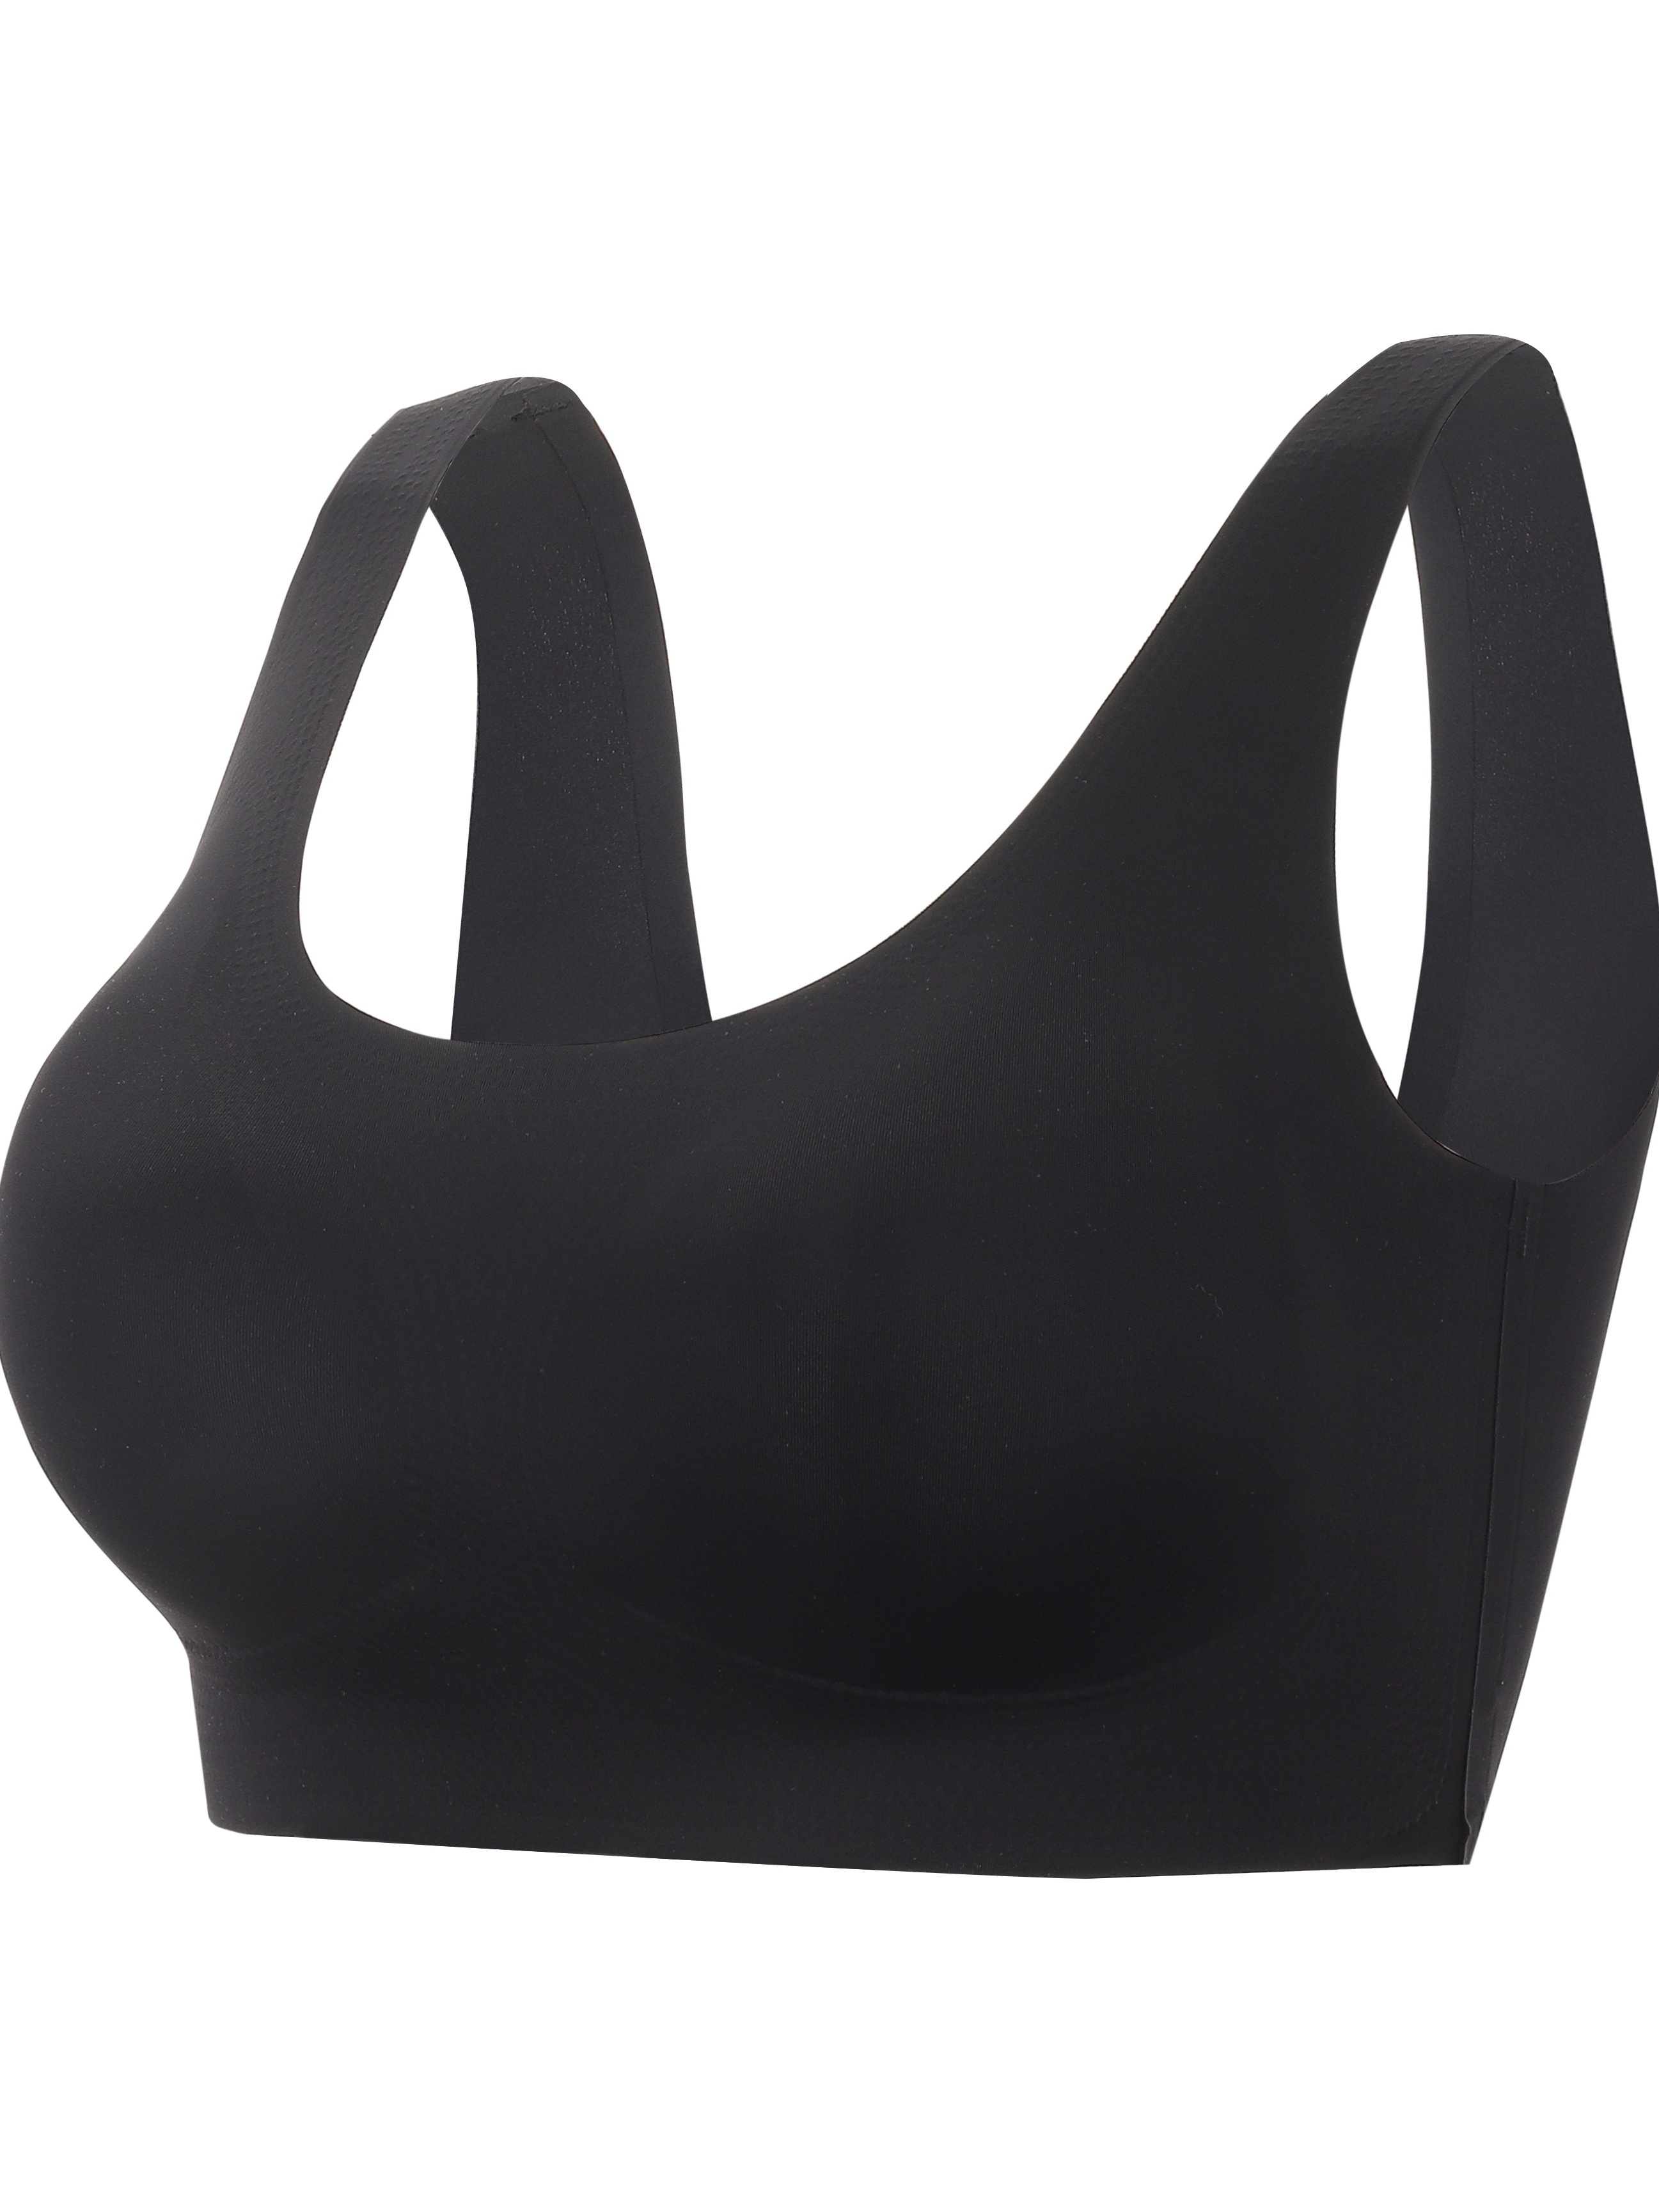 Underoutfit Bras for Women Wireless Push-Up Yoga Bra Solid Print Black  Xxxxl 